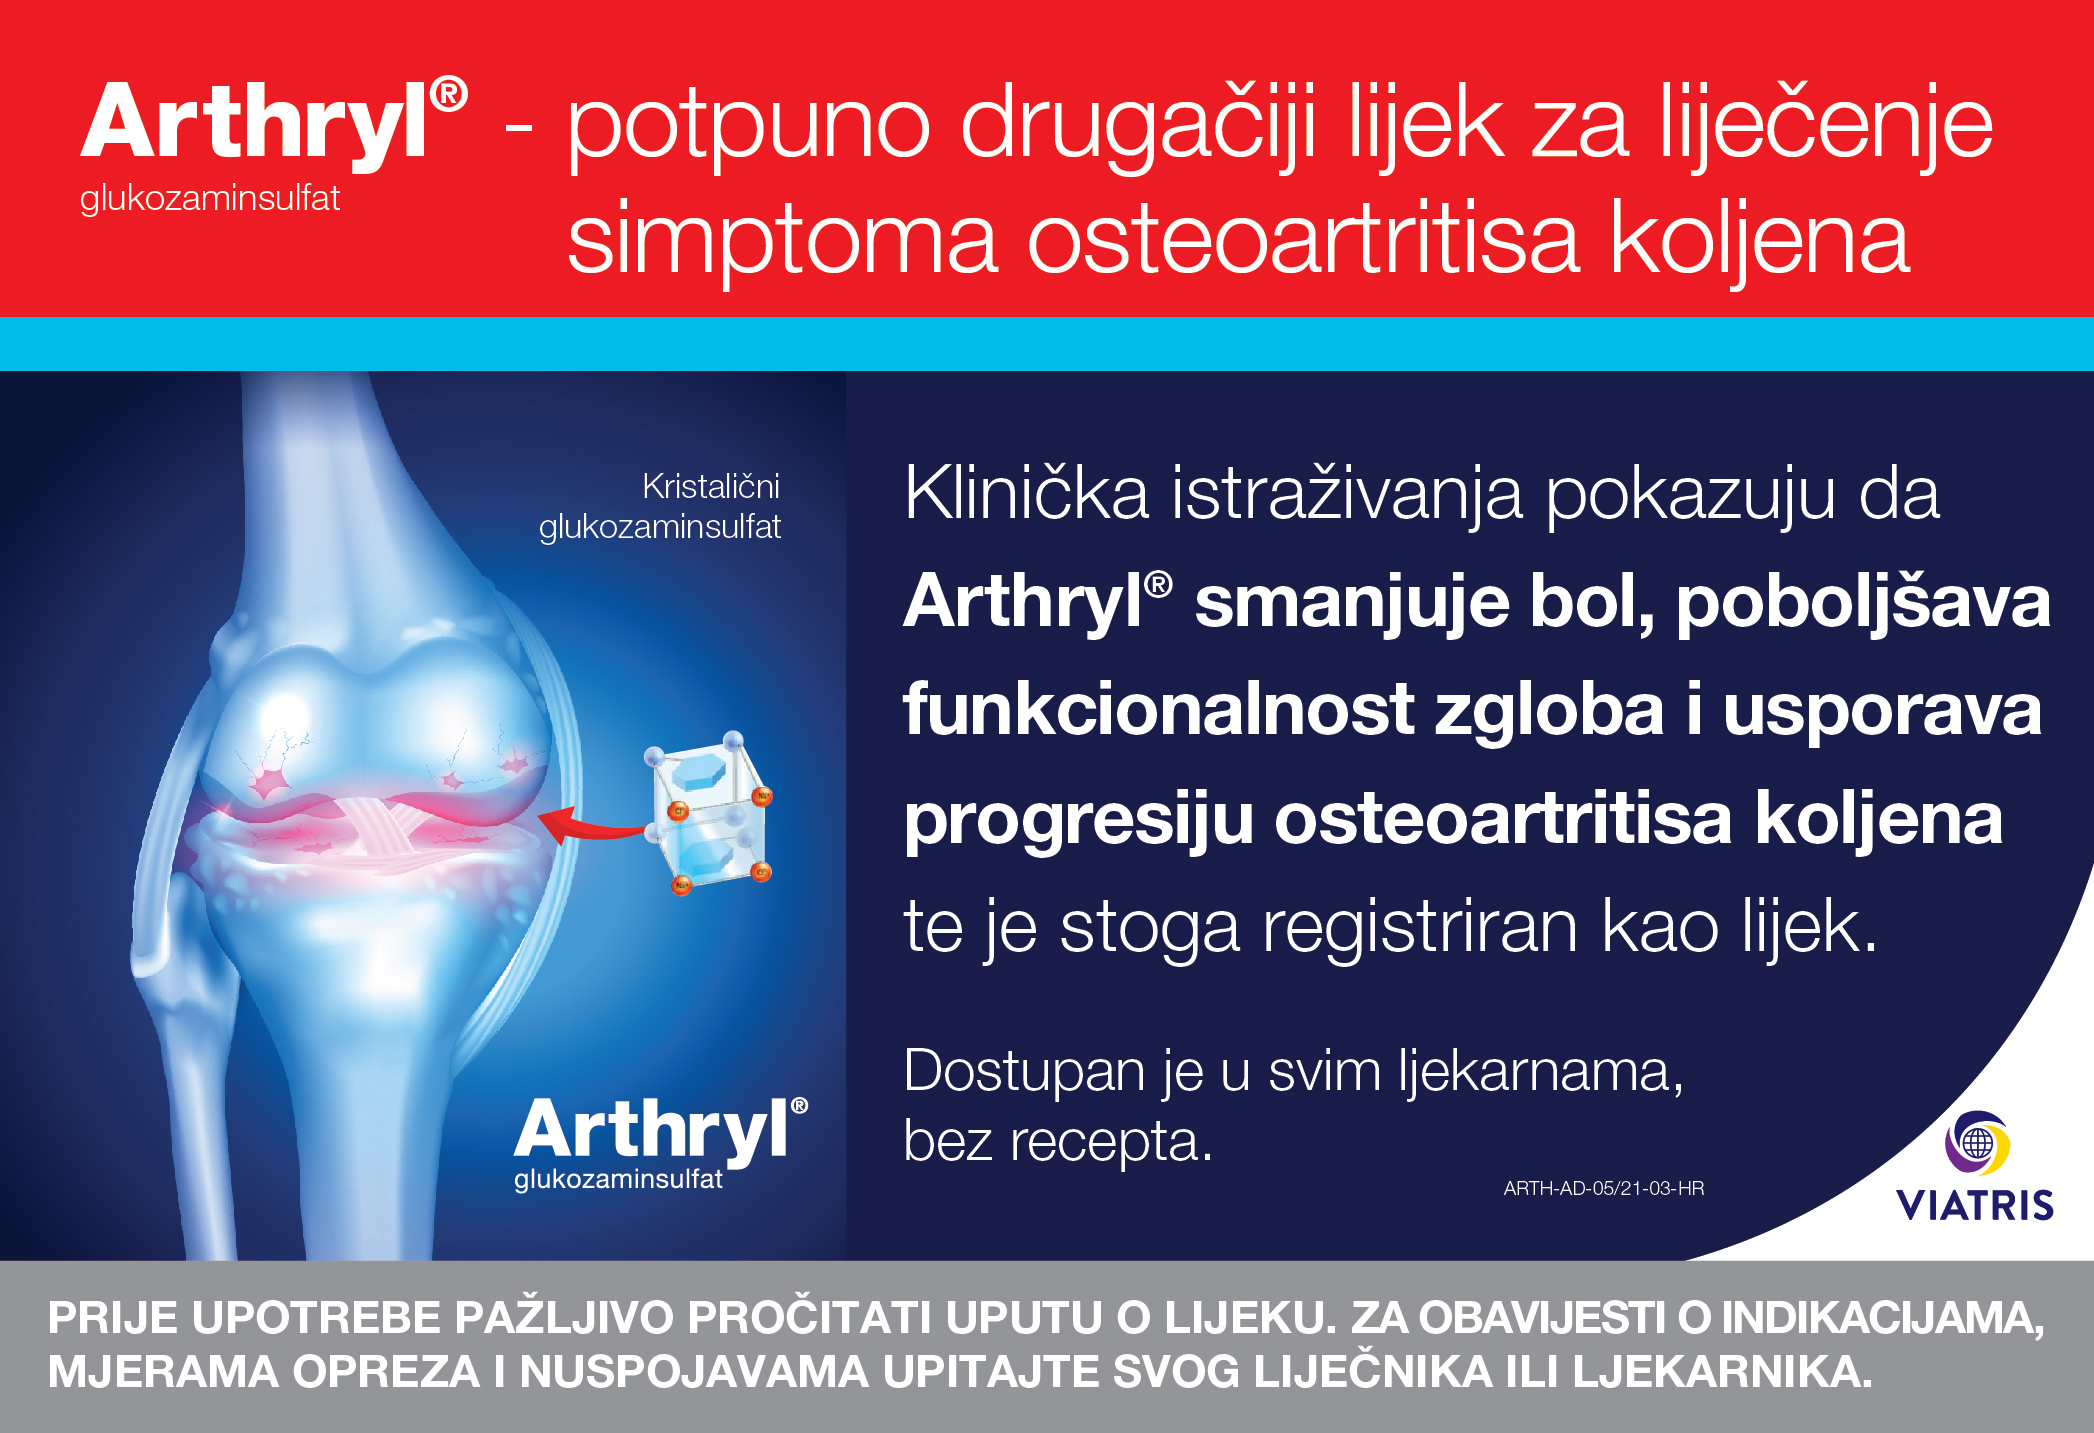 ARTHRYL osteoartritis